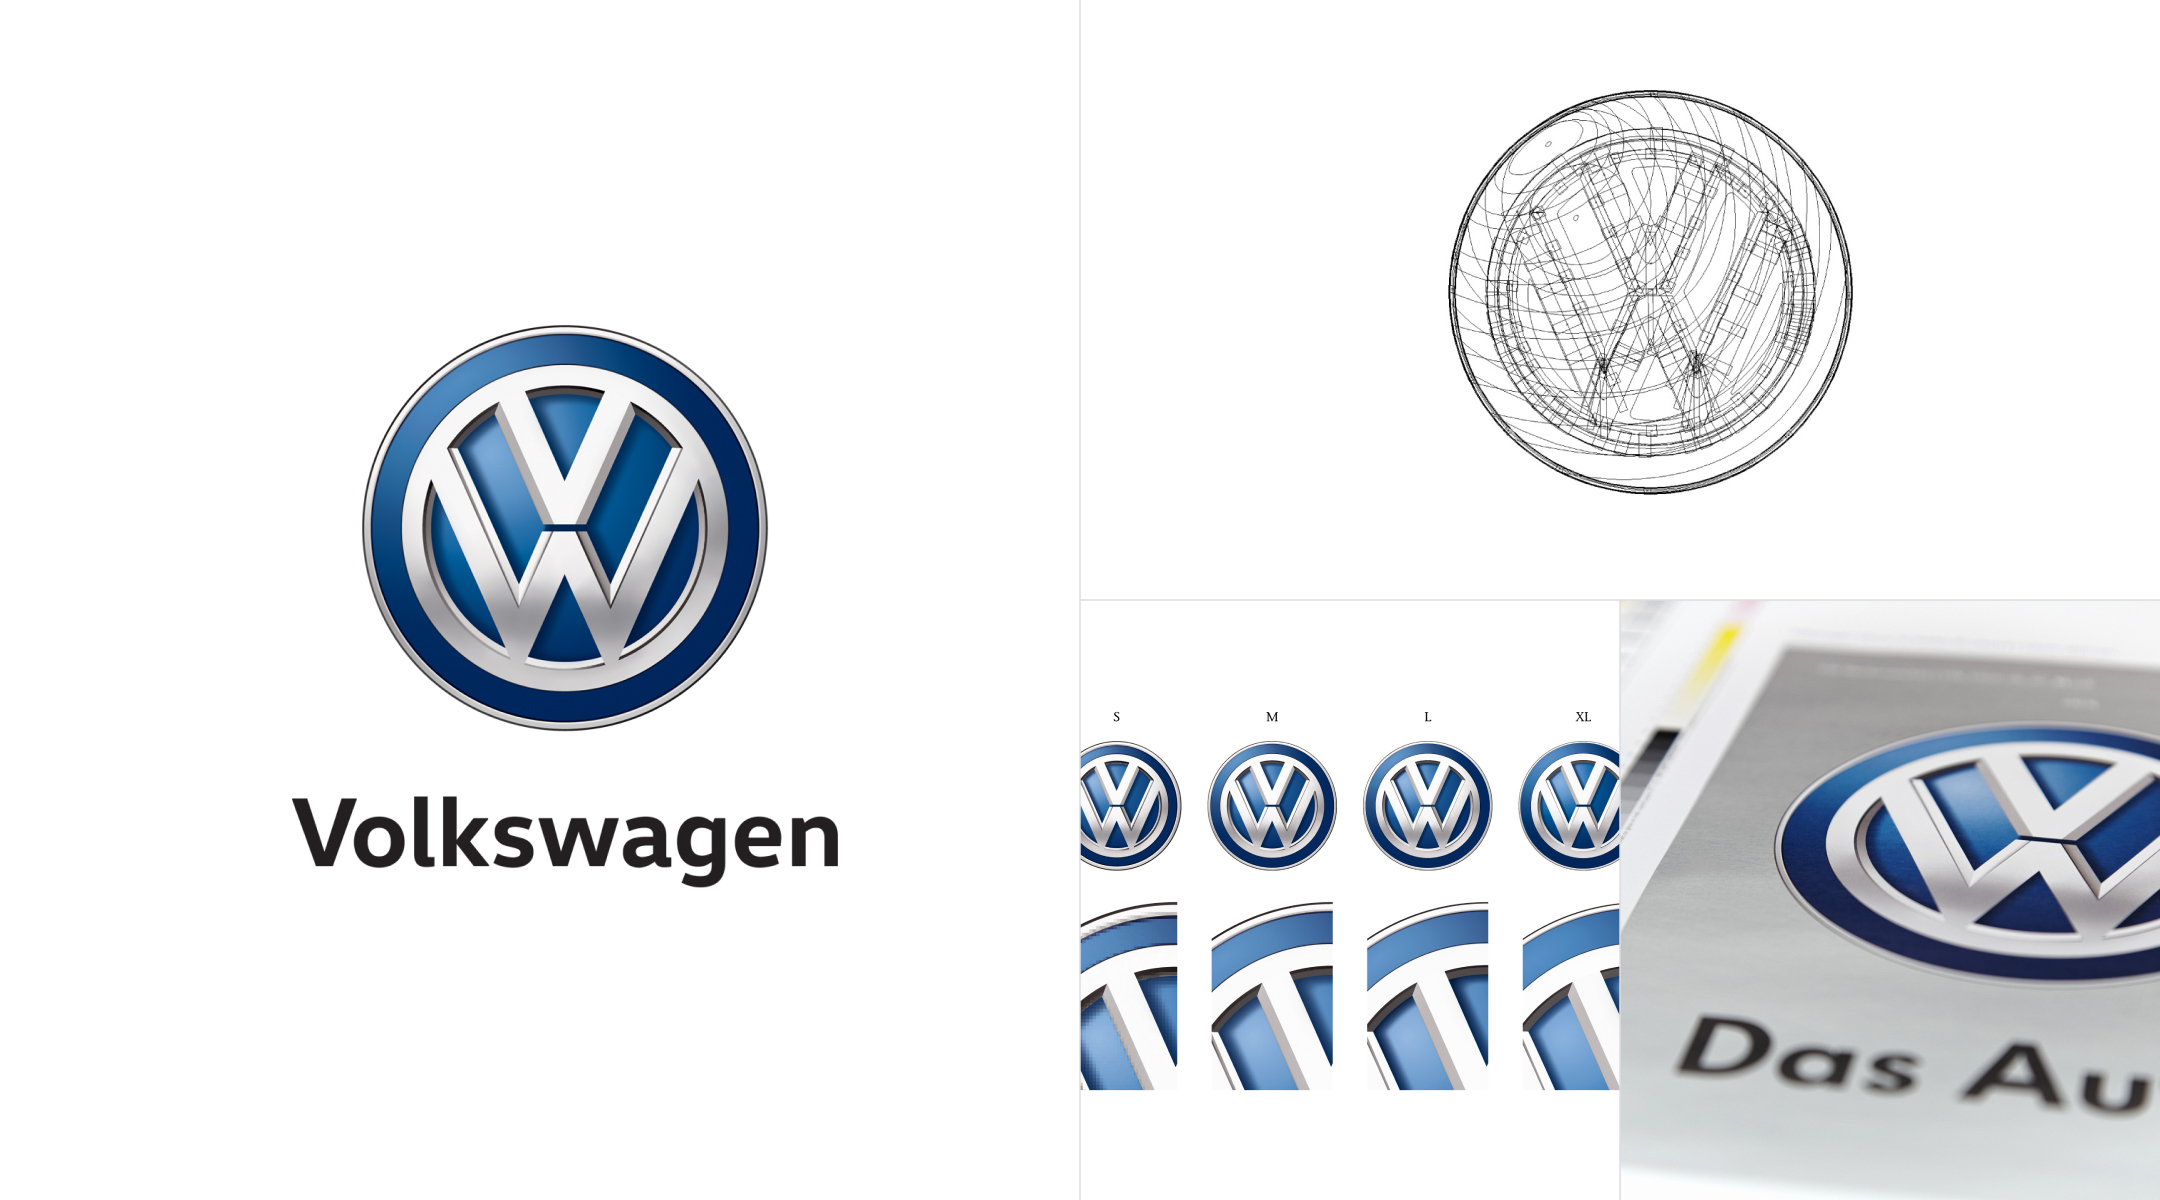 Volkswagen project